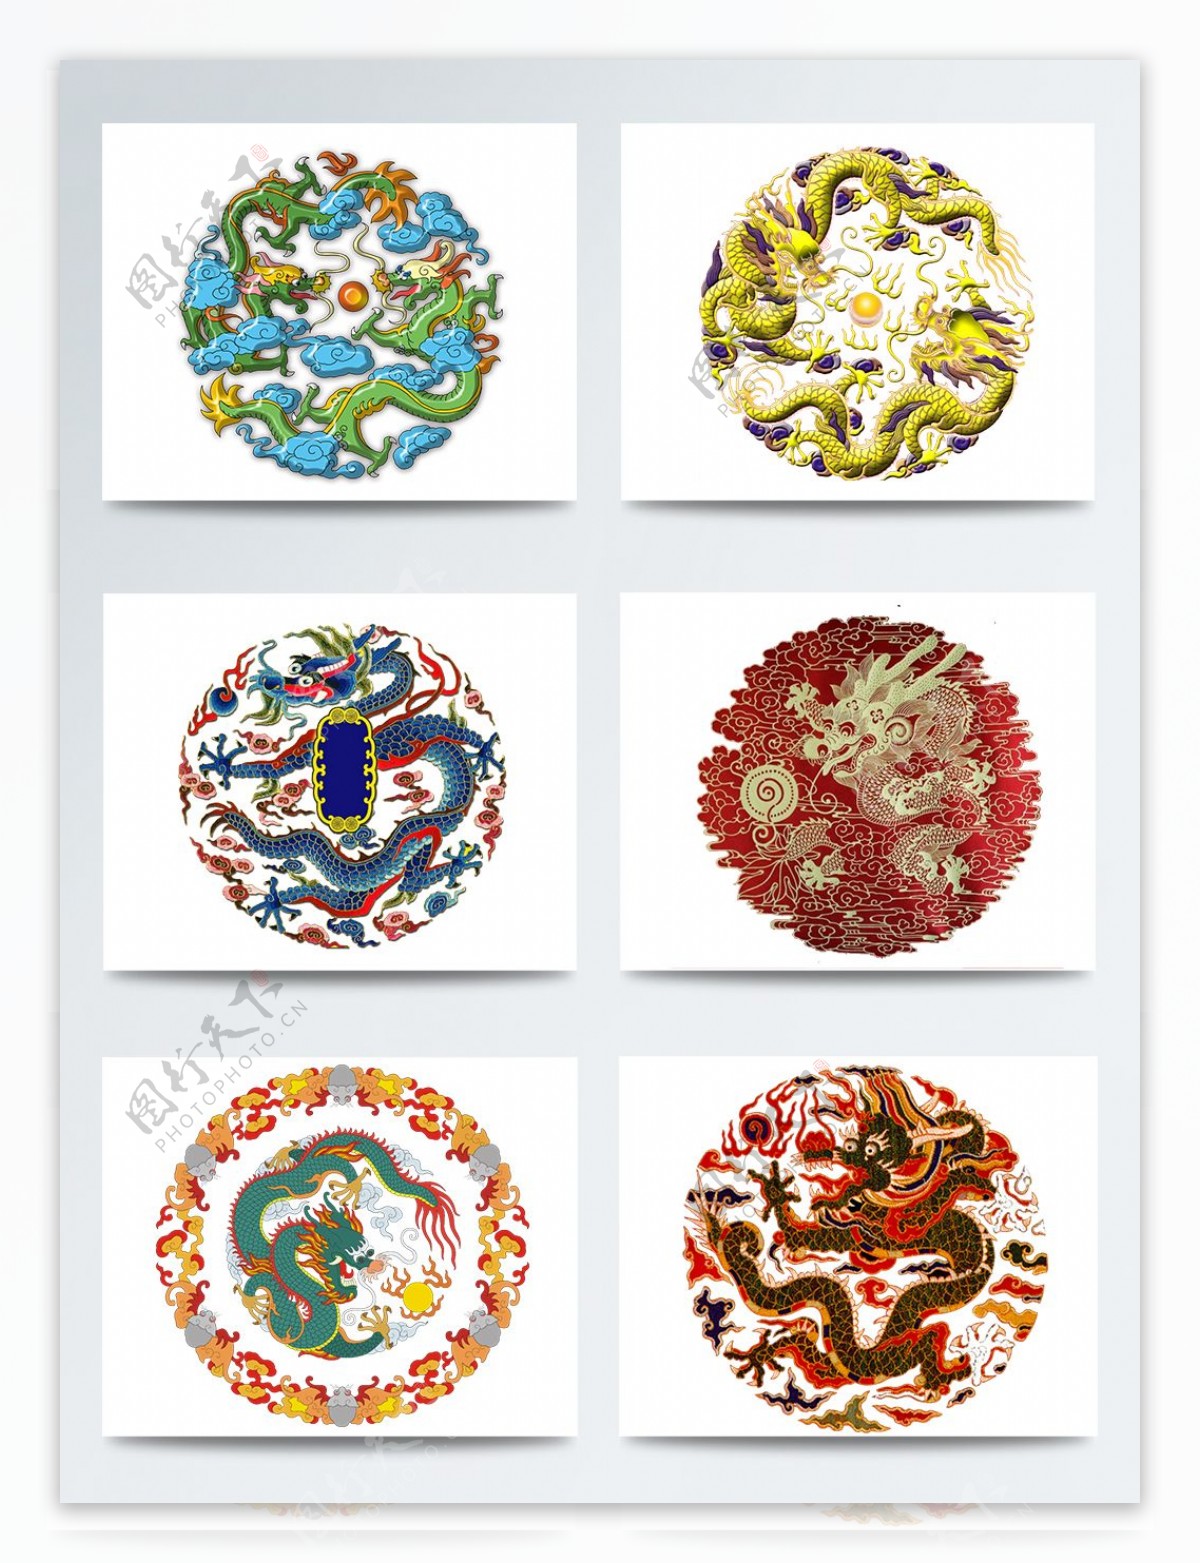 中国龙装饰图标合集